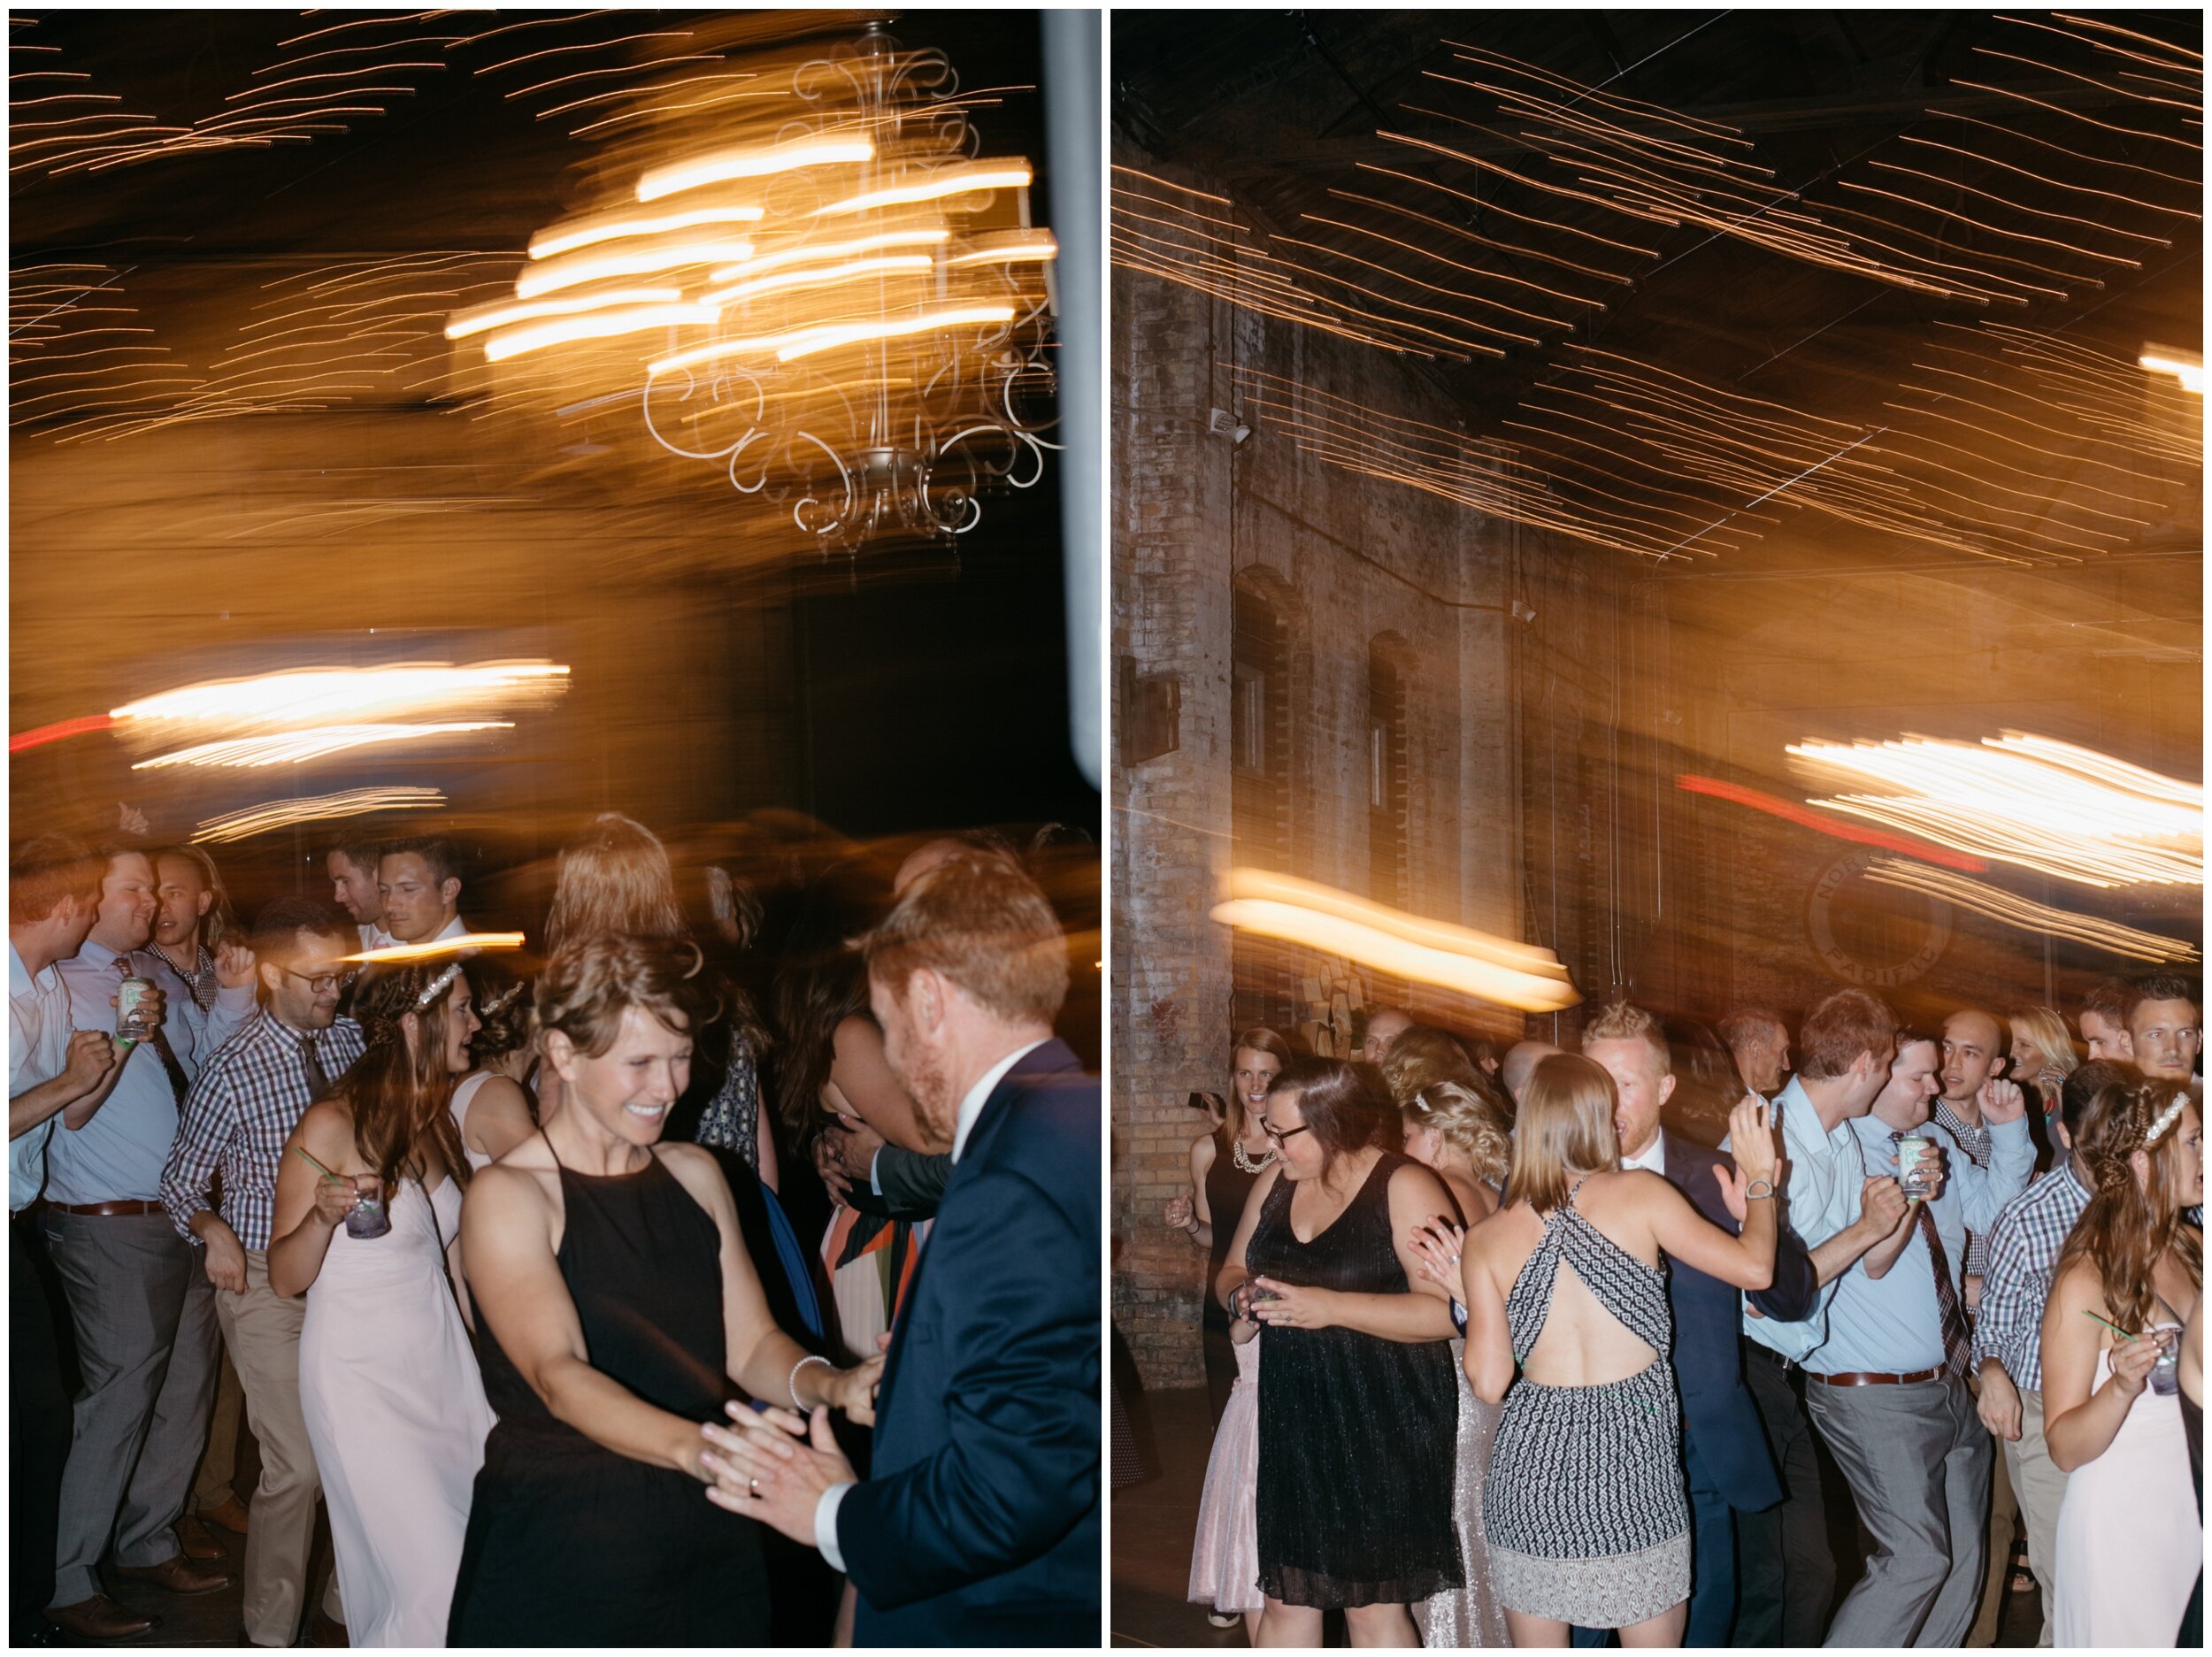 Wedding guests dancing in industrial warehouse wedding